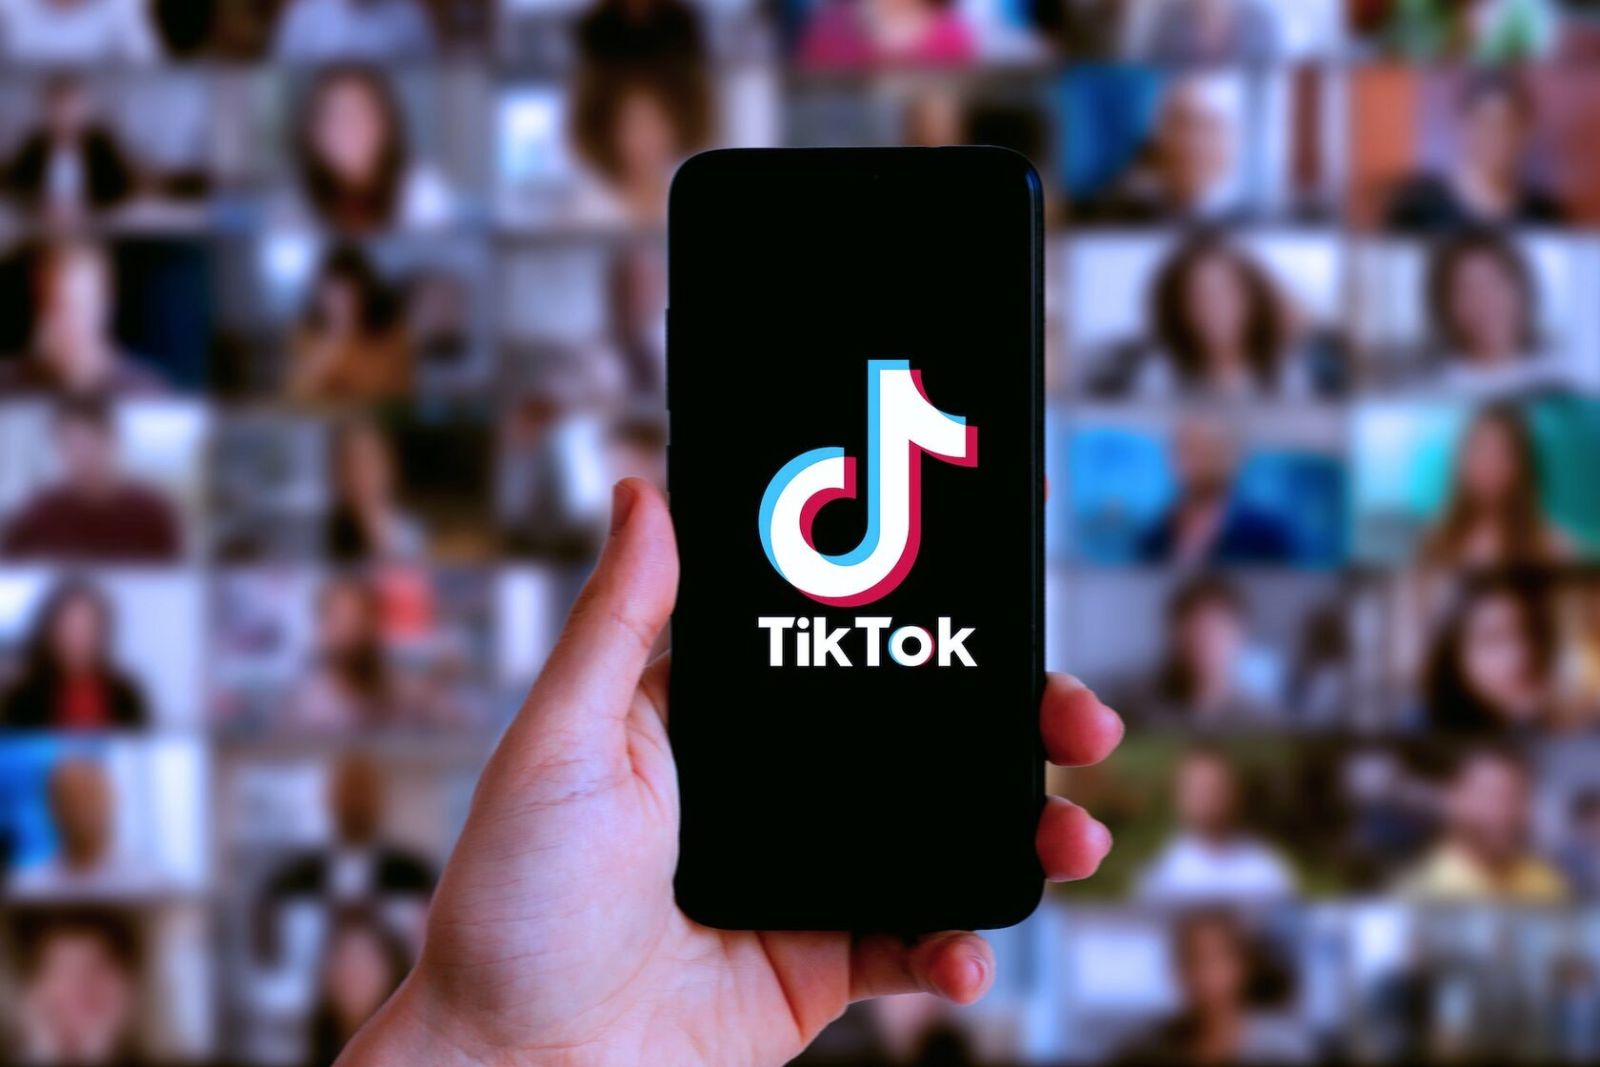 Ən çox izlənilən "TikTok" hesabları – TOP 10